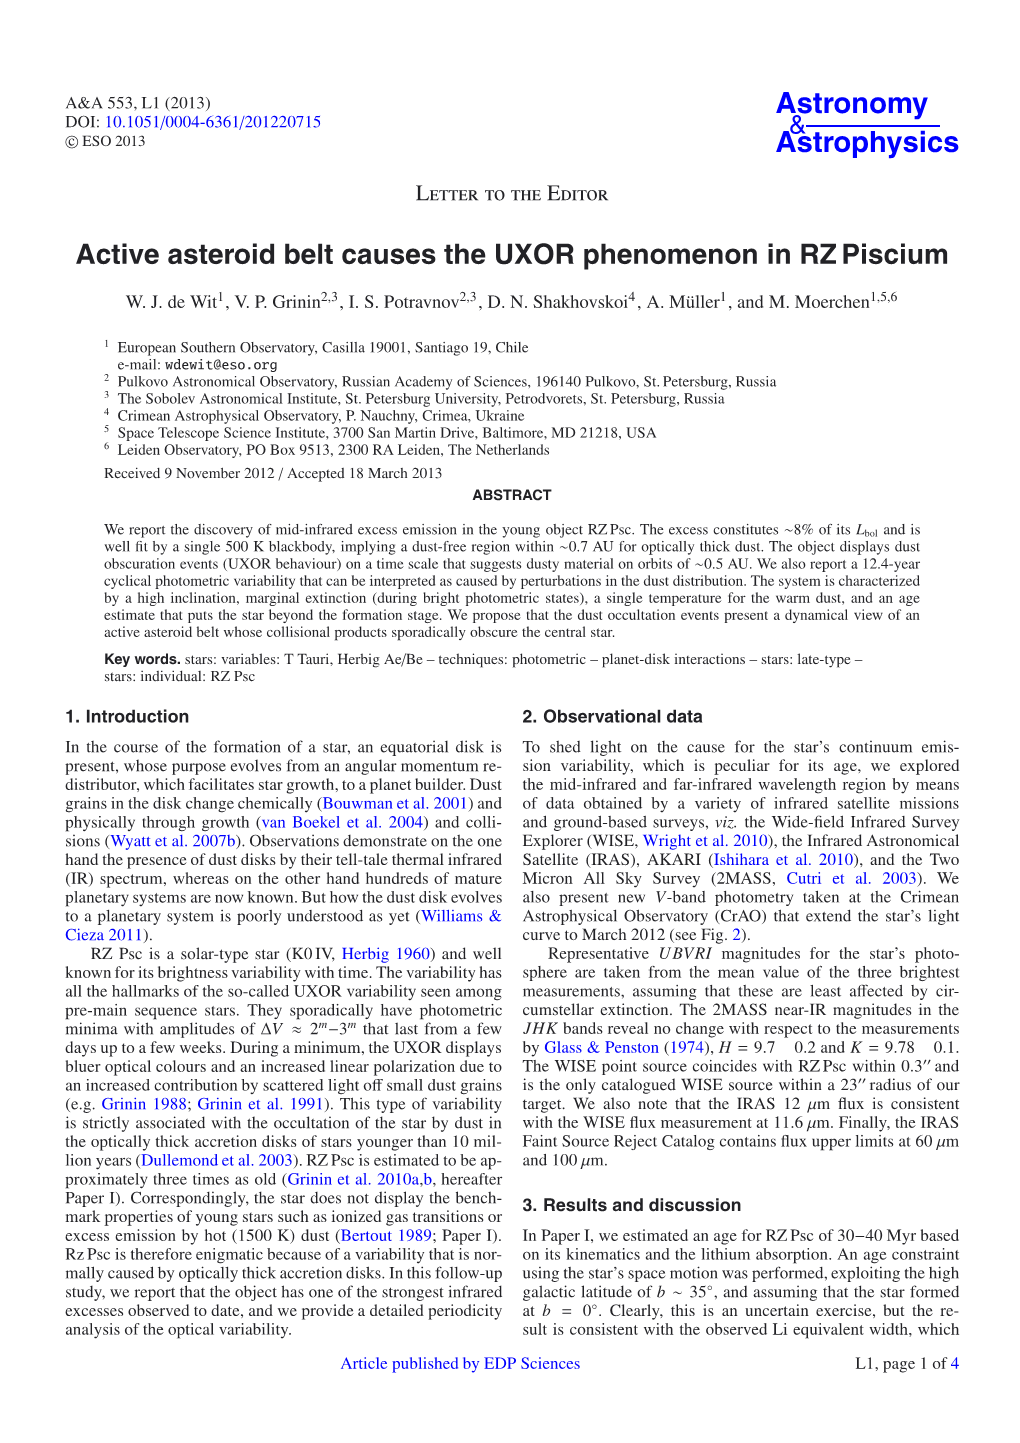 Active Asteroid Belt Causes the UXOR Phenomenon in RZ Piscium